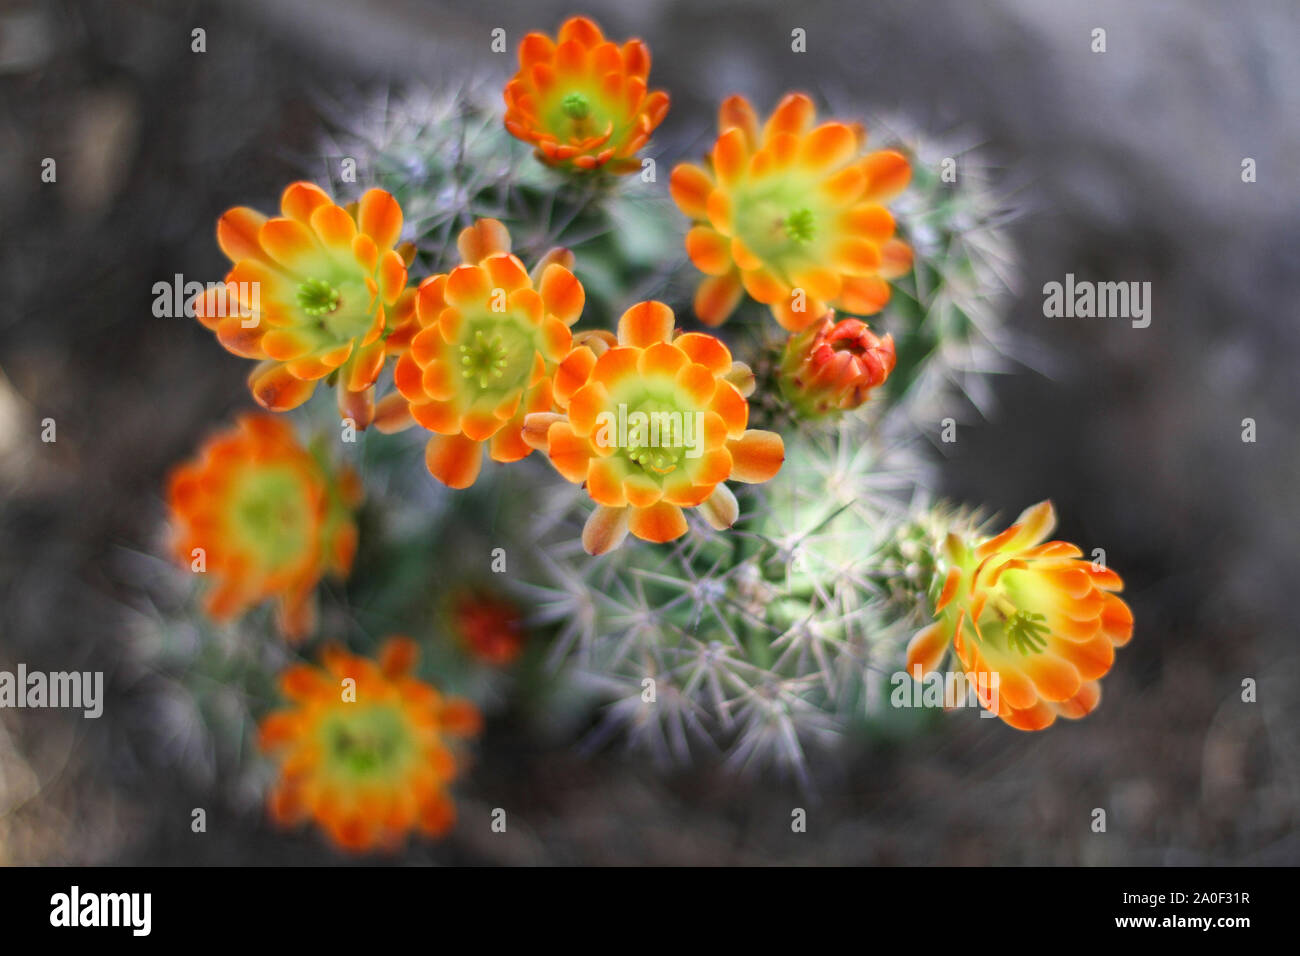 Orange gelb Blumen blühen auf Igel Kaktus in der Wüste. Kaktus Stacheln sind in Soft Focus im Hintergrund. Kingcup oder claretcup Kaktus (echinocer Stockfoto